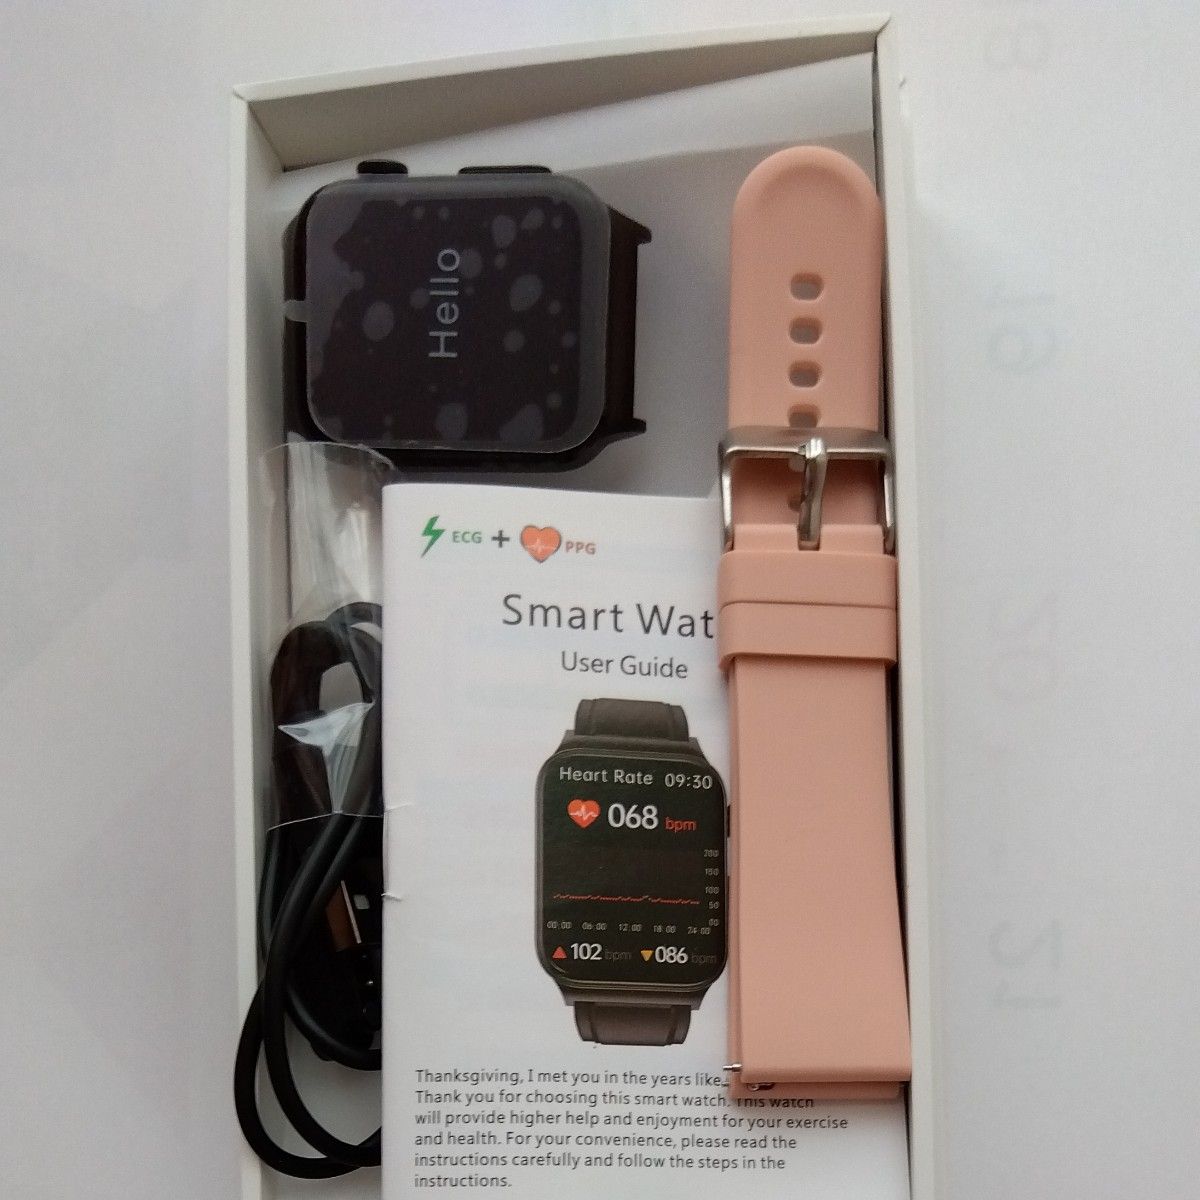 スマートウォッチ 日本製センサー 心電図ECG+PPT 血糖値 体温 高精度心拍数 血圧測定 血中酸素 歩数計 24時間健康管理 